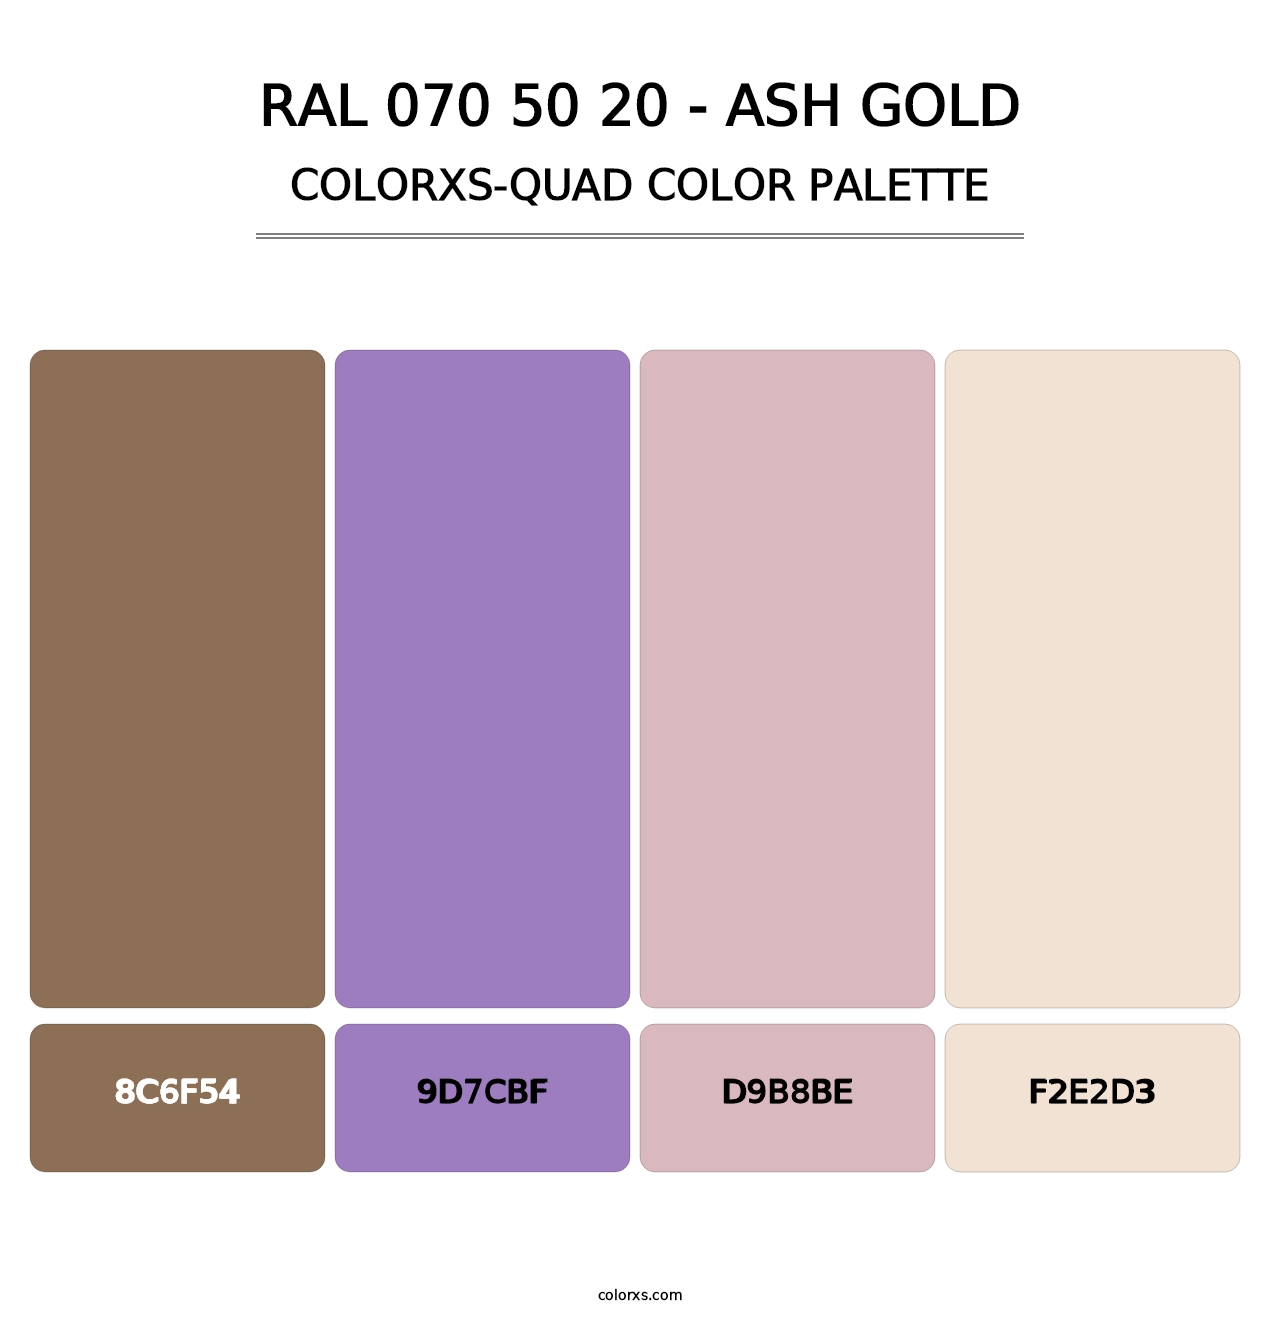 RAL 070 50 20 - Ash Gold - Colorxs Quad Palette